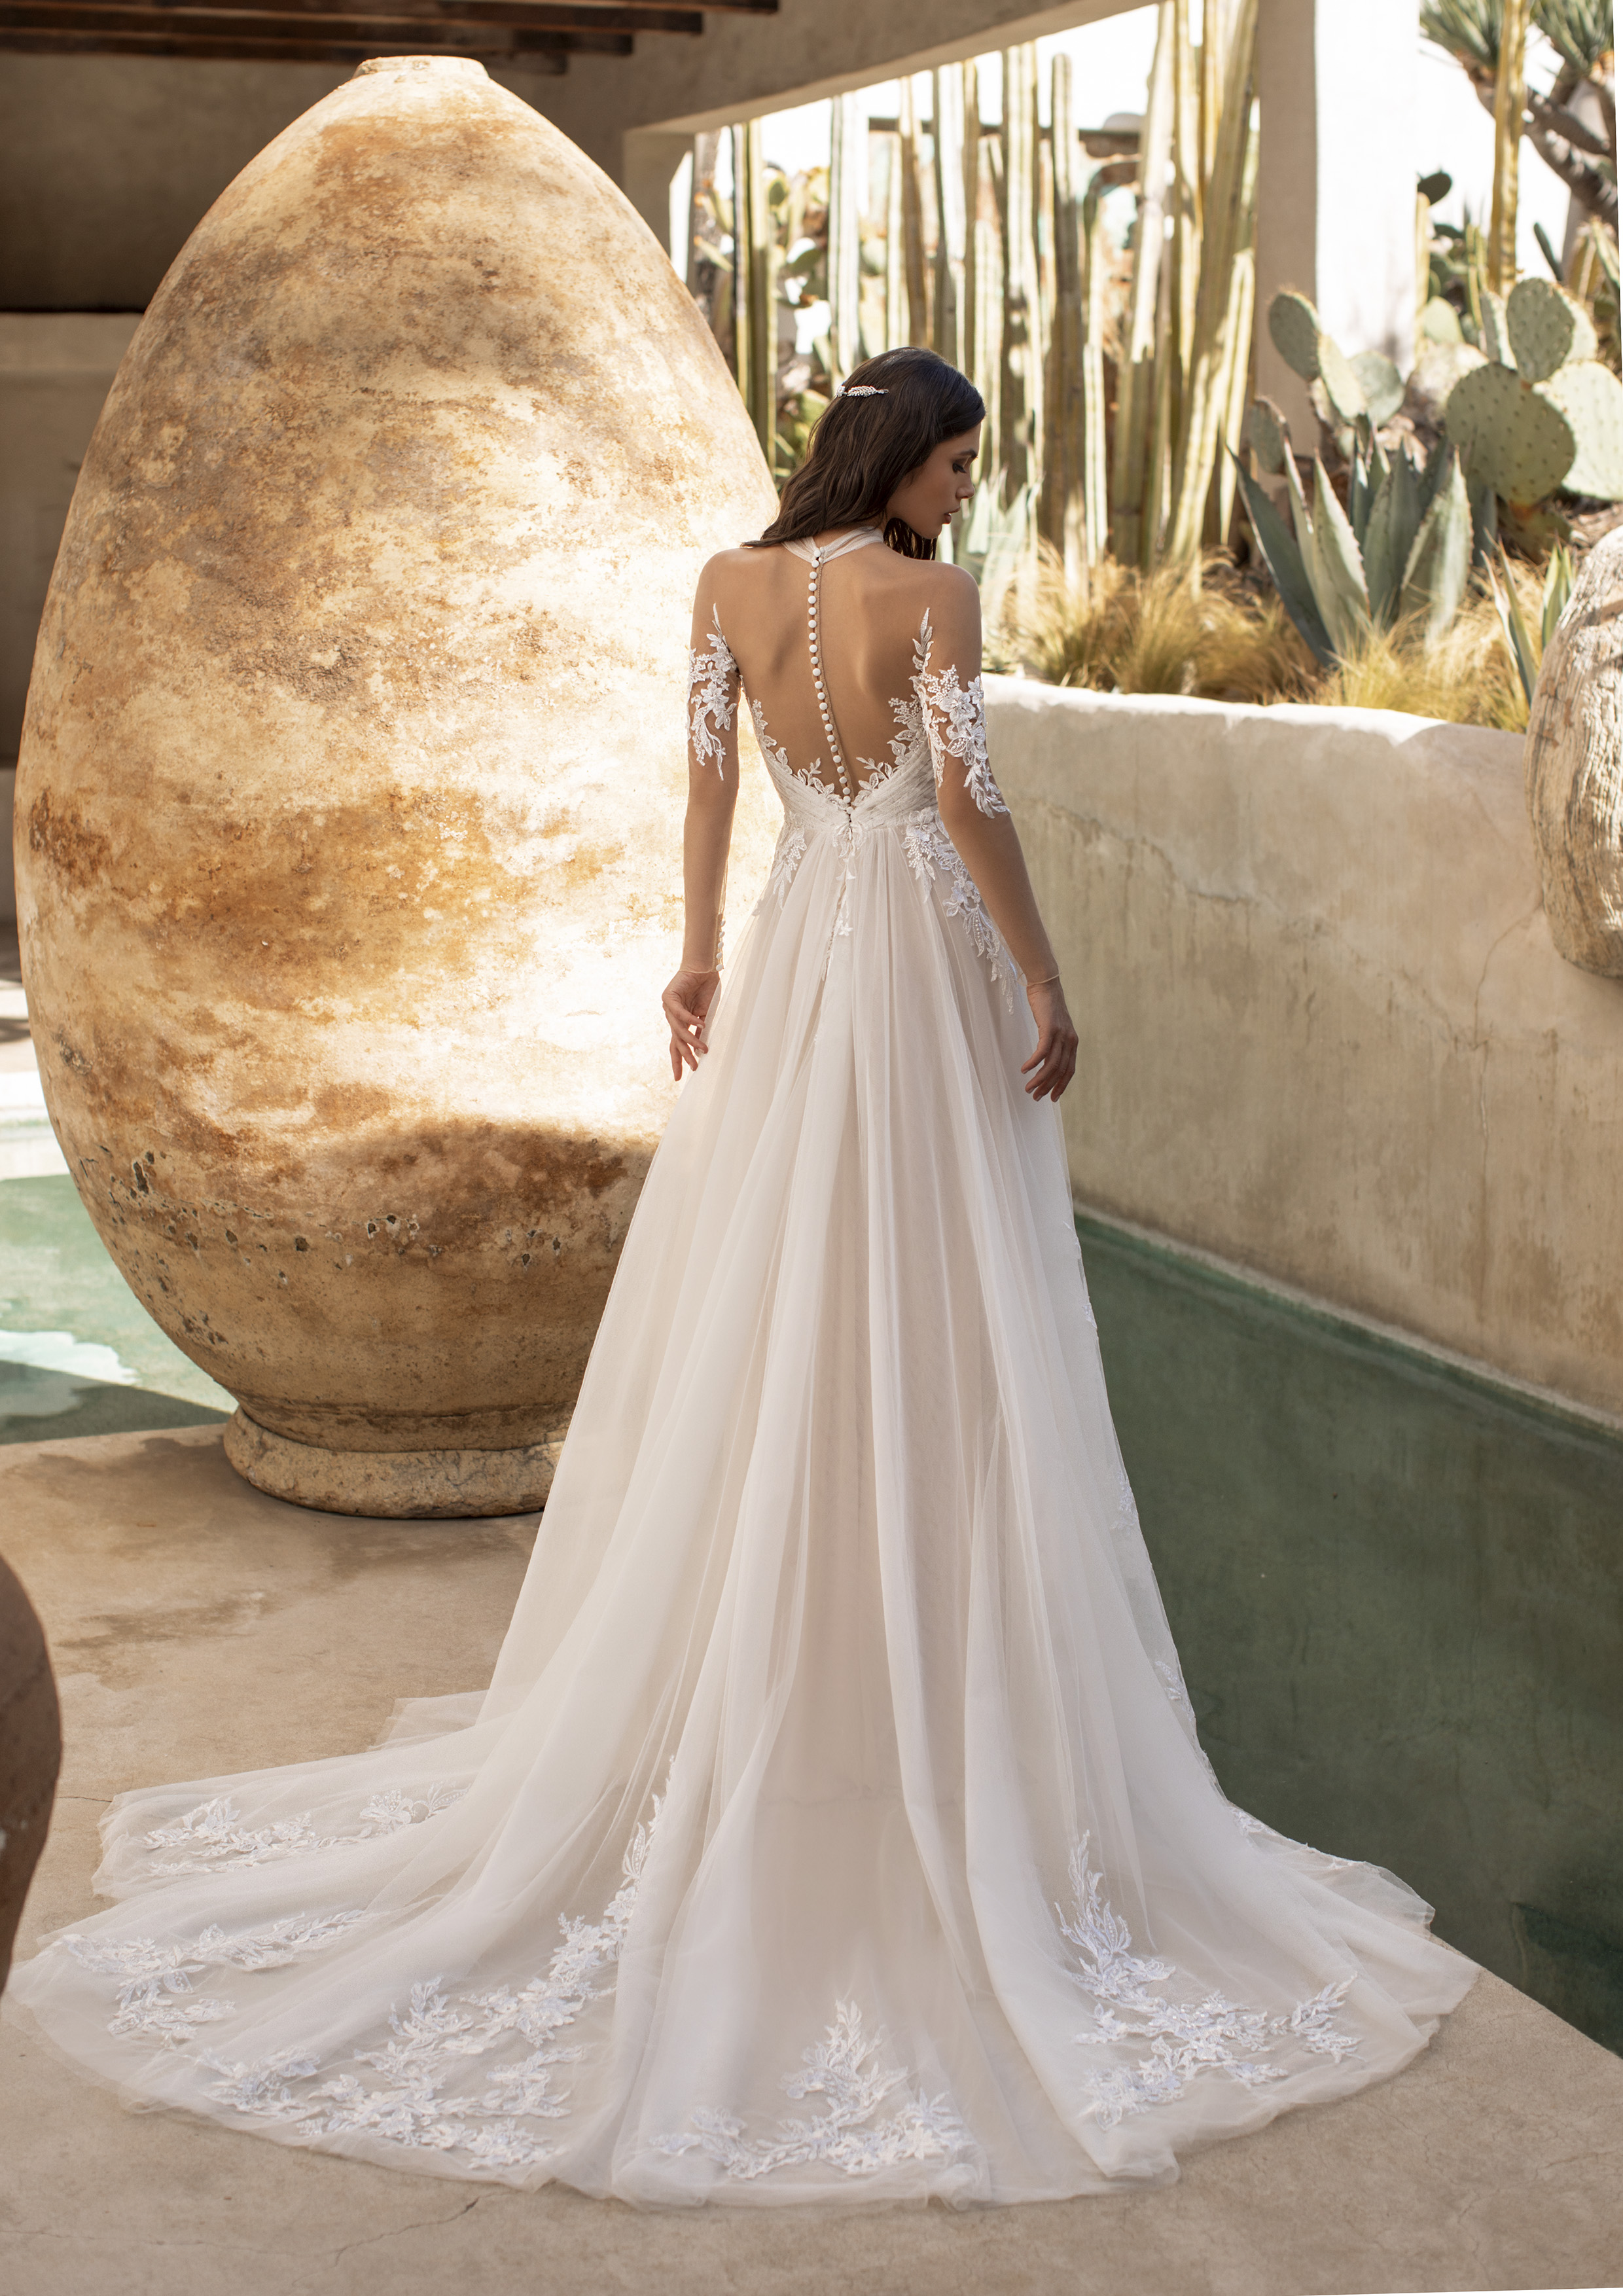 Vestido de noiva modelo Garland da coleção Pronovias 2021 Cruise Collection